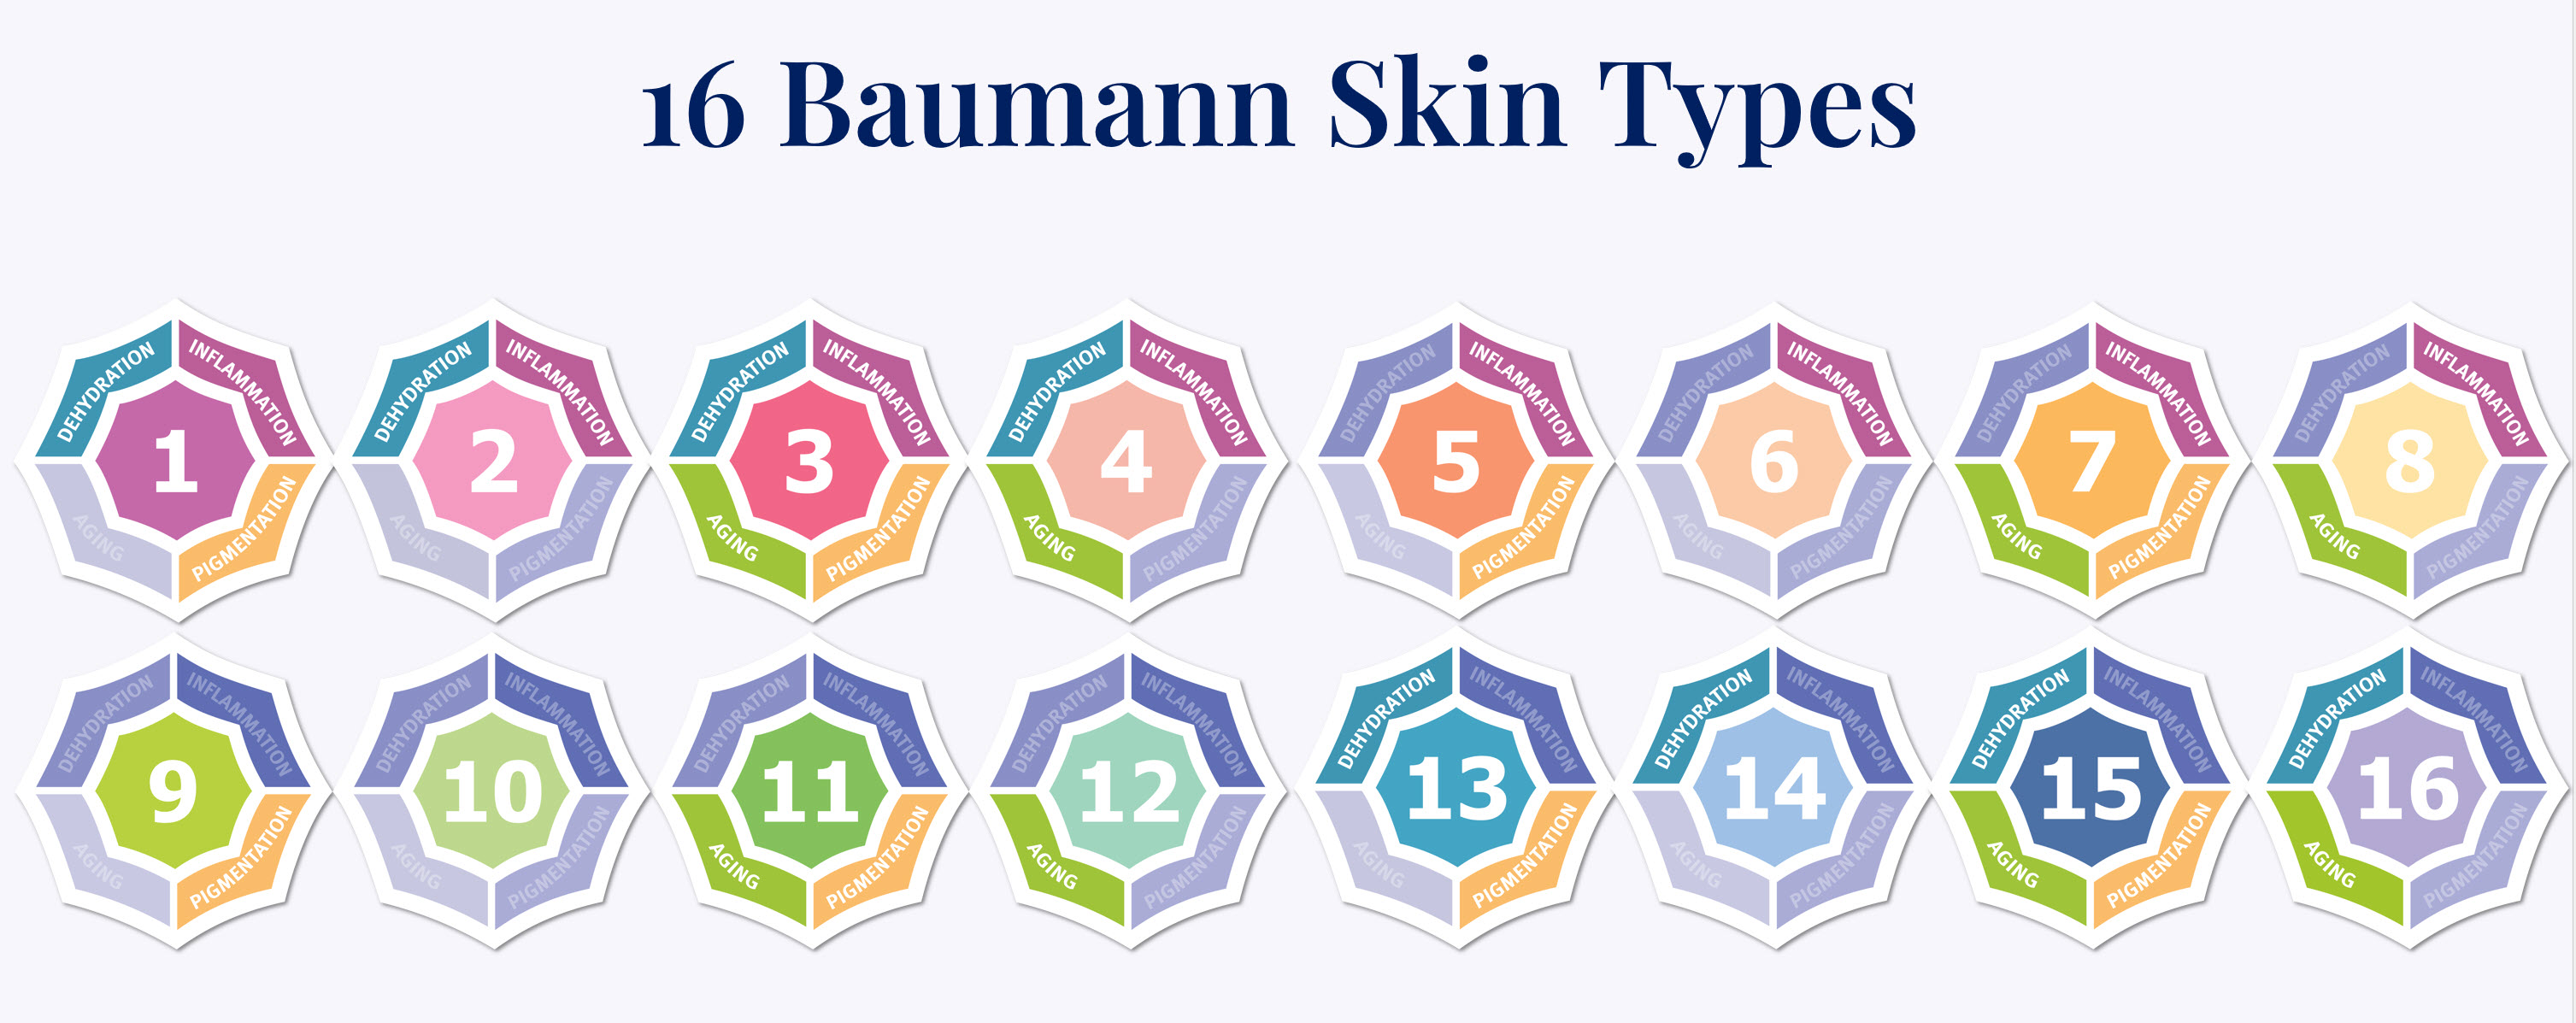 16 baumann skin types 2 rows.jpg